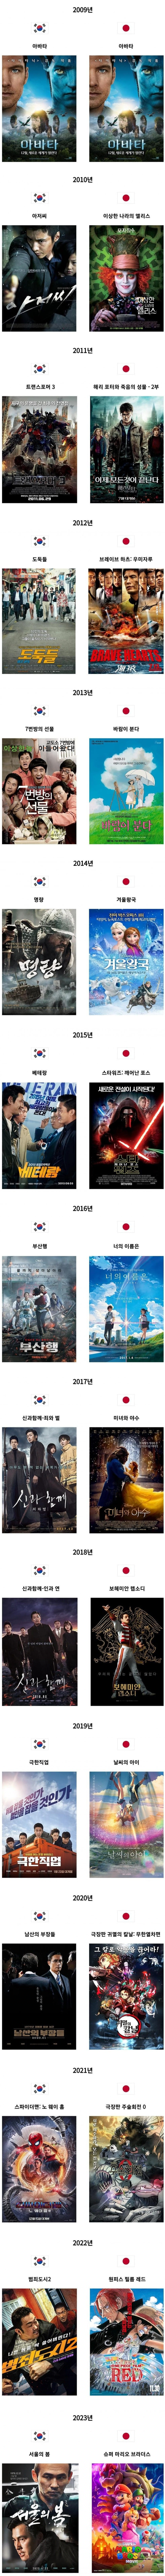 15년간 한국 일본 박스오피스 1위 영화.jpg